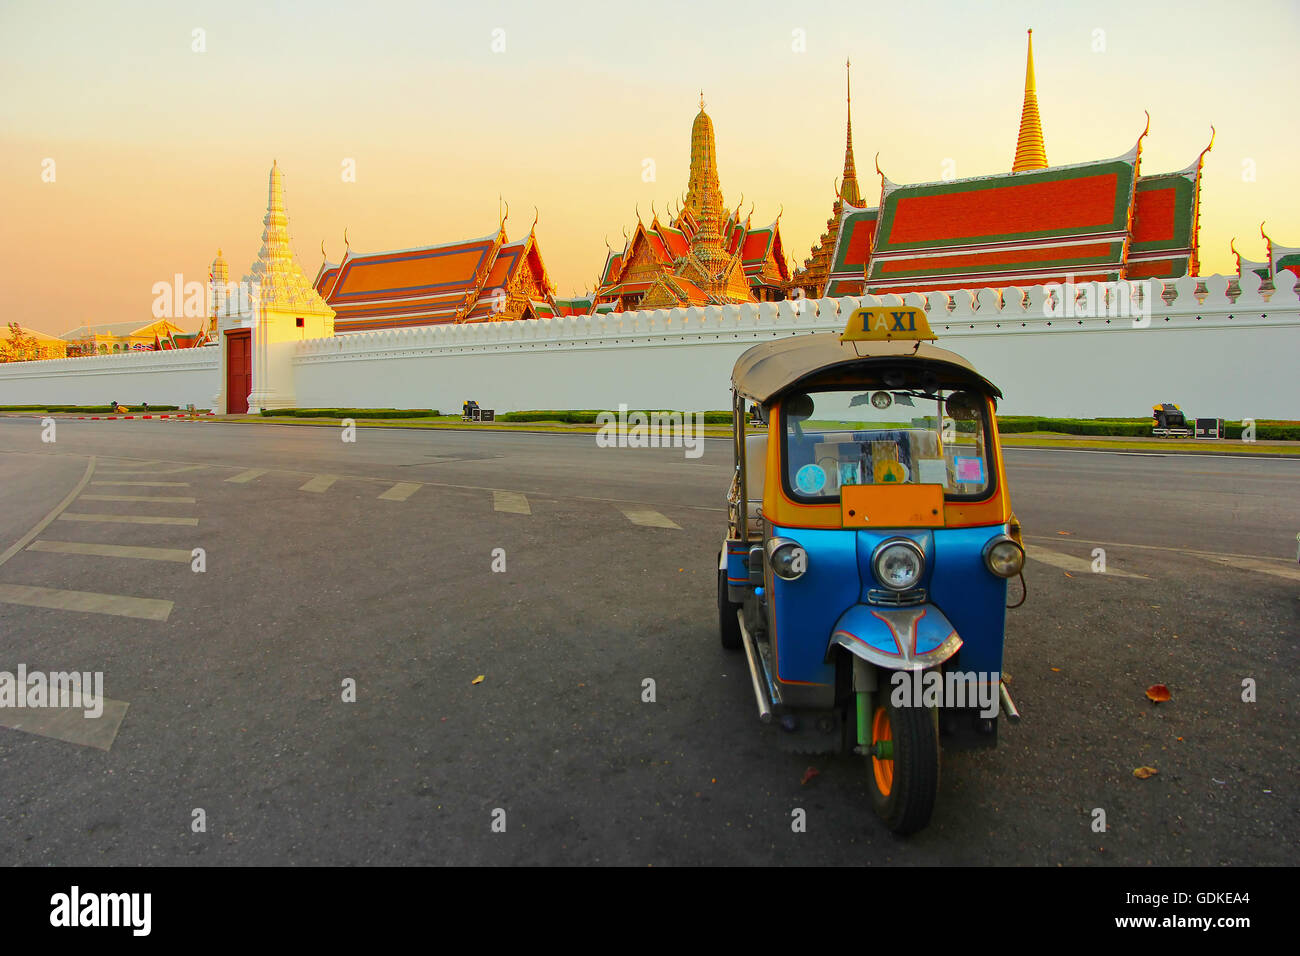 Tuk tuk for passenger cars. To go sightseeing in Bangkok. Stock Photo